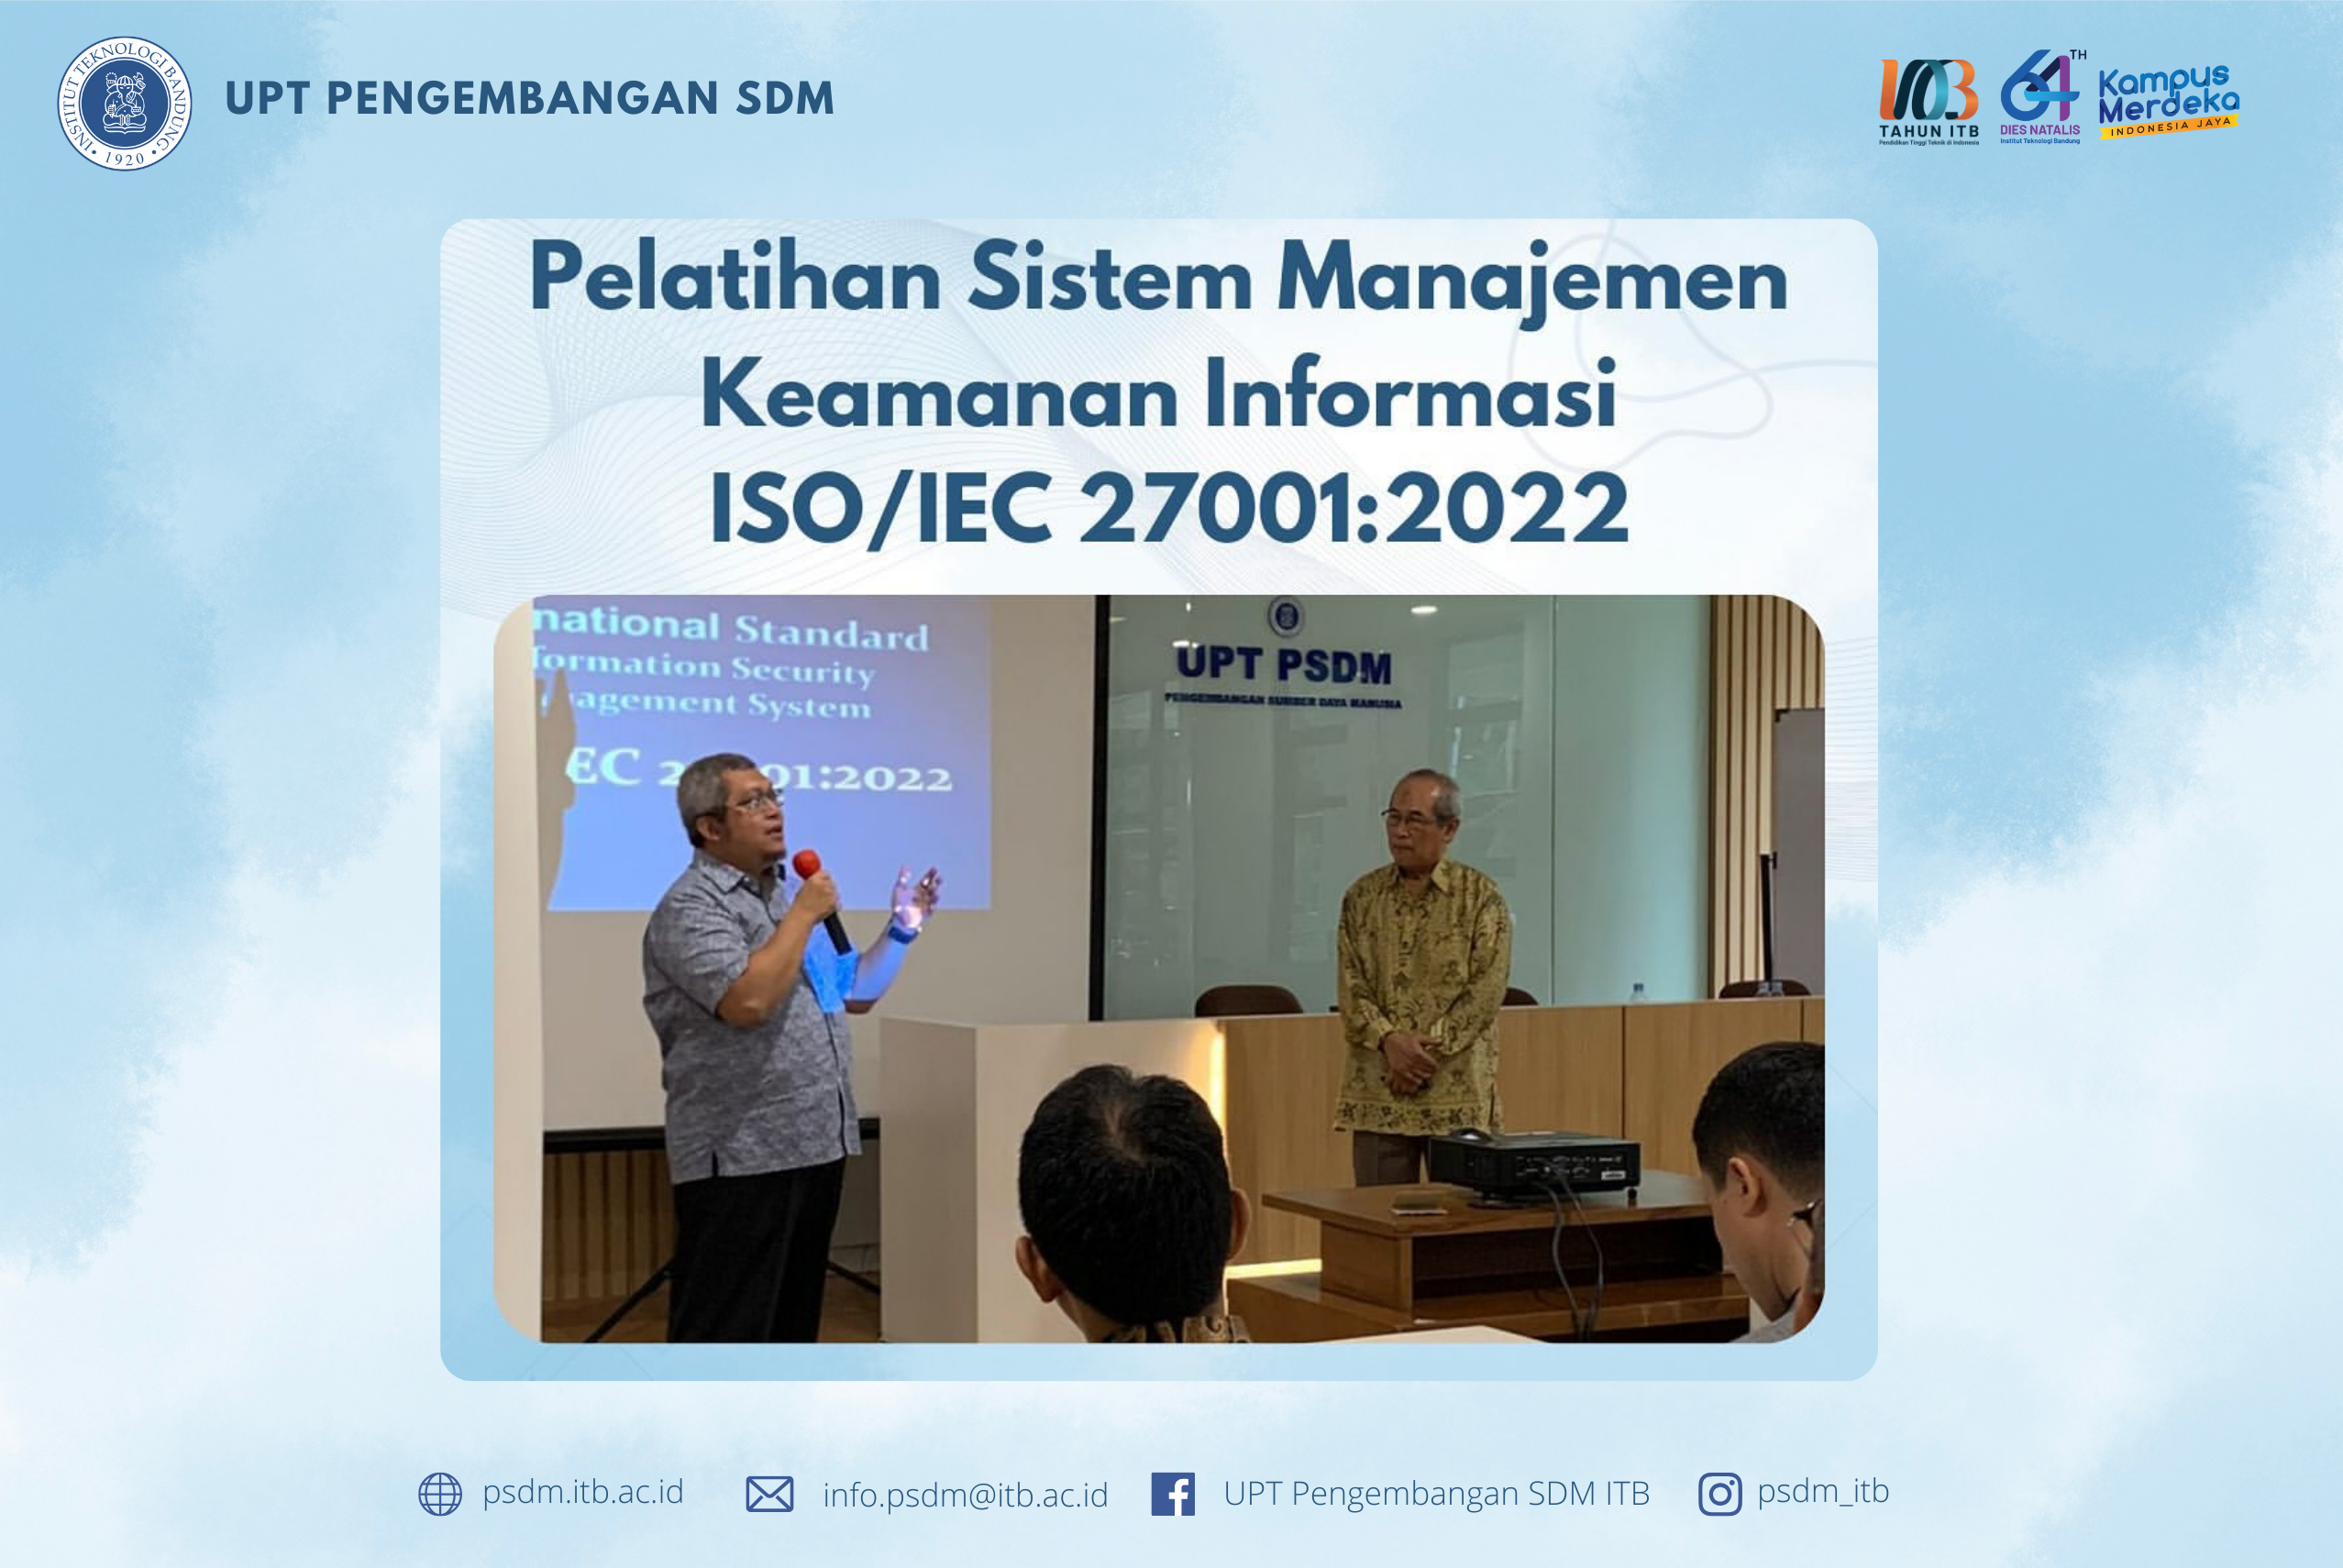 UPT PSDM ITB Sukses Menyelenggarakan Pelatihan Sistem Manajemen Keamanan Informasi ISO/IEC 27001:2022